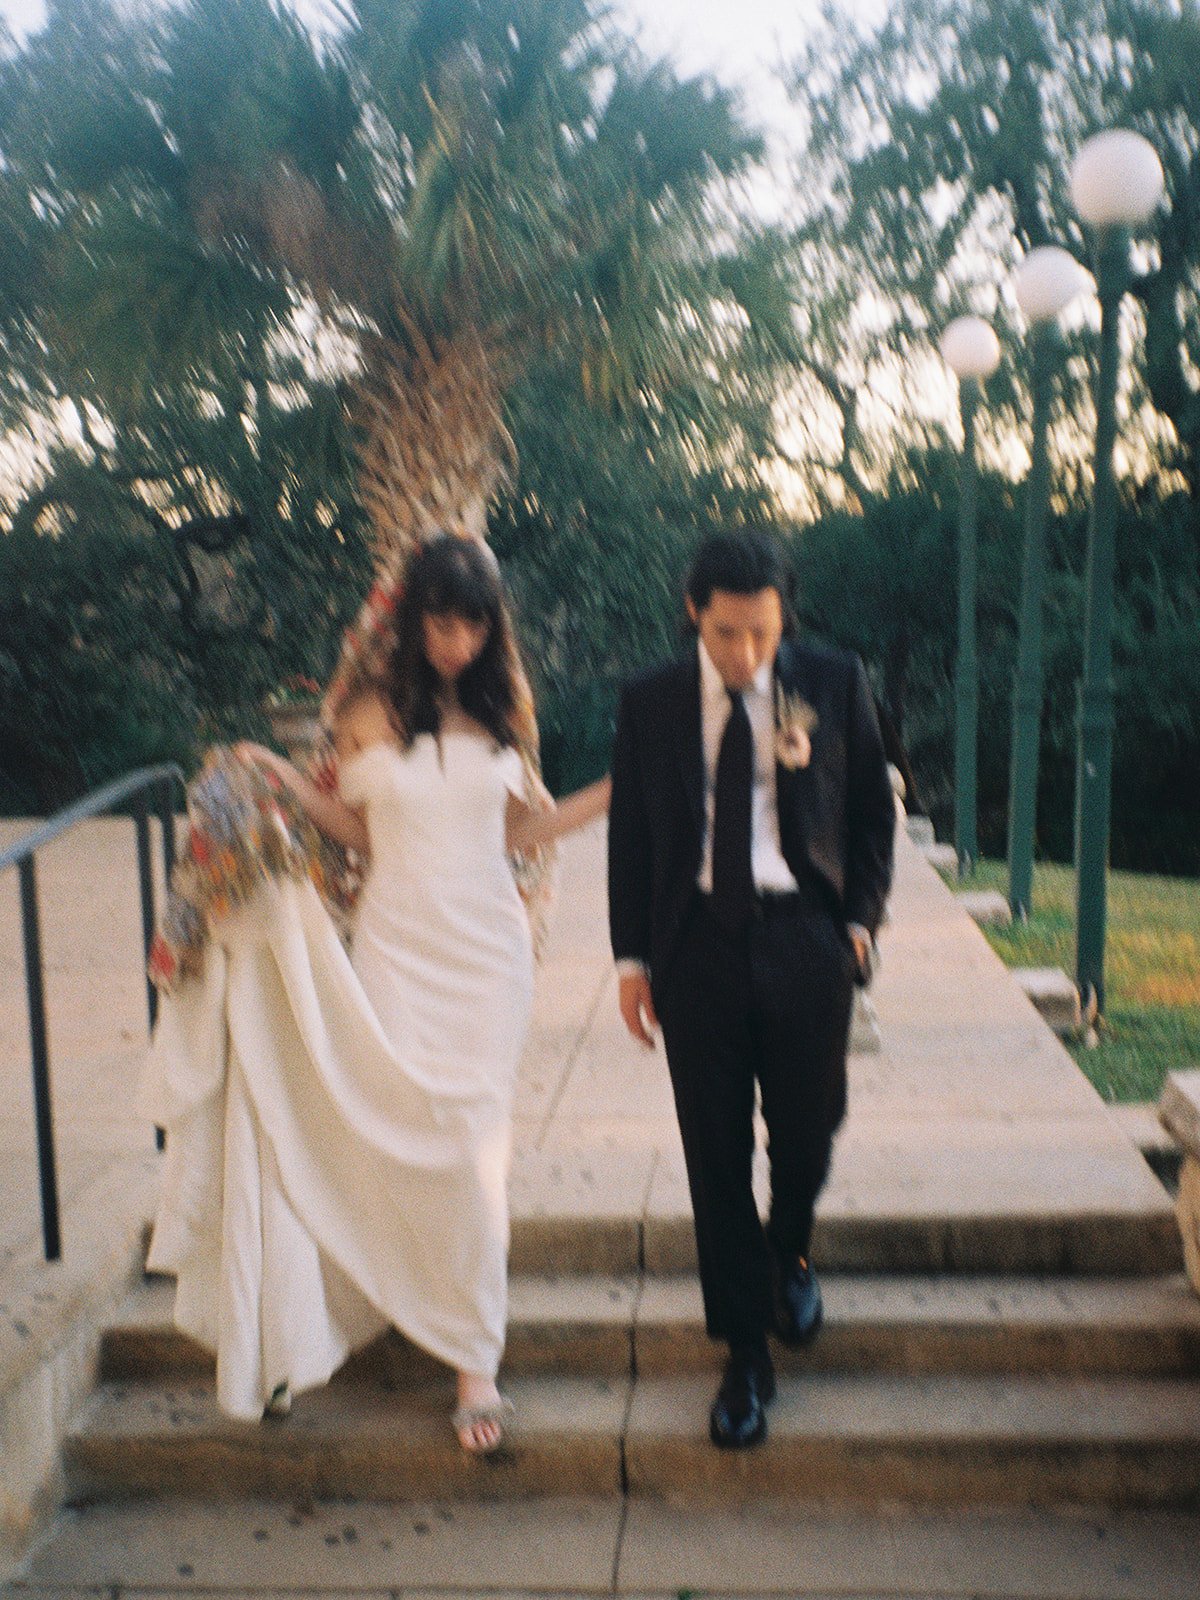 Best-Austin-Wedding-Photographers-Elopement-Film-35mm-Asheville-Santa-Barbara-Laguna-Gloria-65.jpg